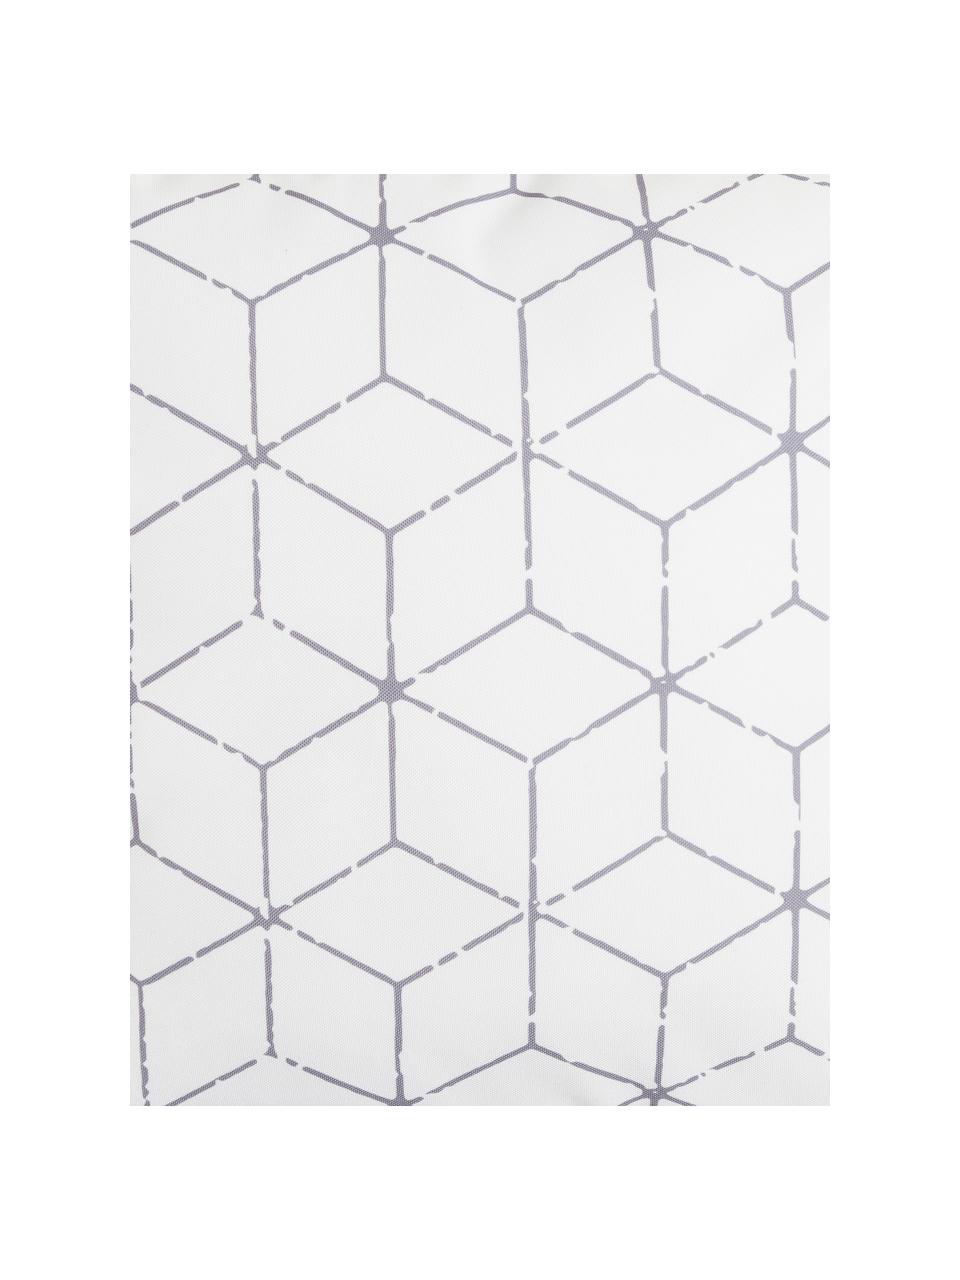 Outdoor kussen Cube met grafisch patroon in grijs/wit, met vulling, 100% polyester, Wit, grijs, 47 x 47 cm